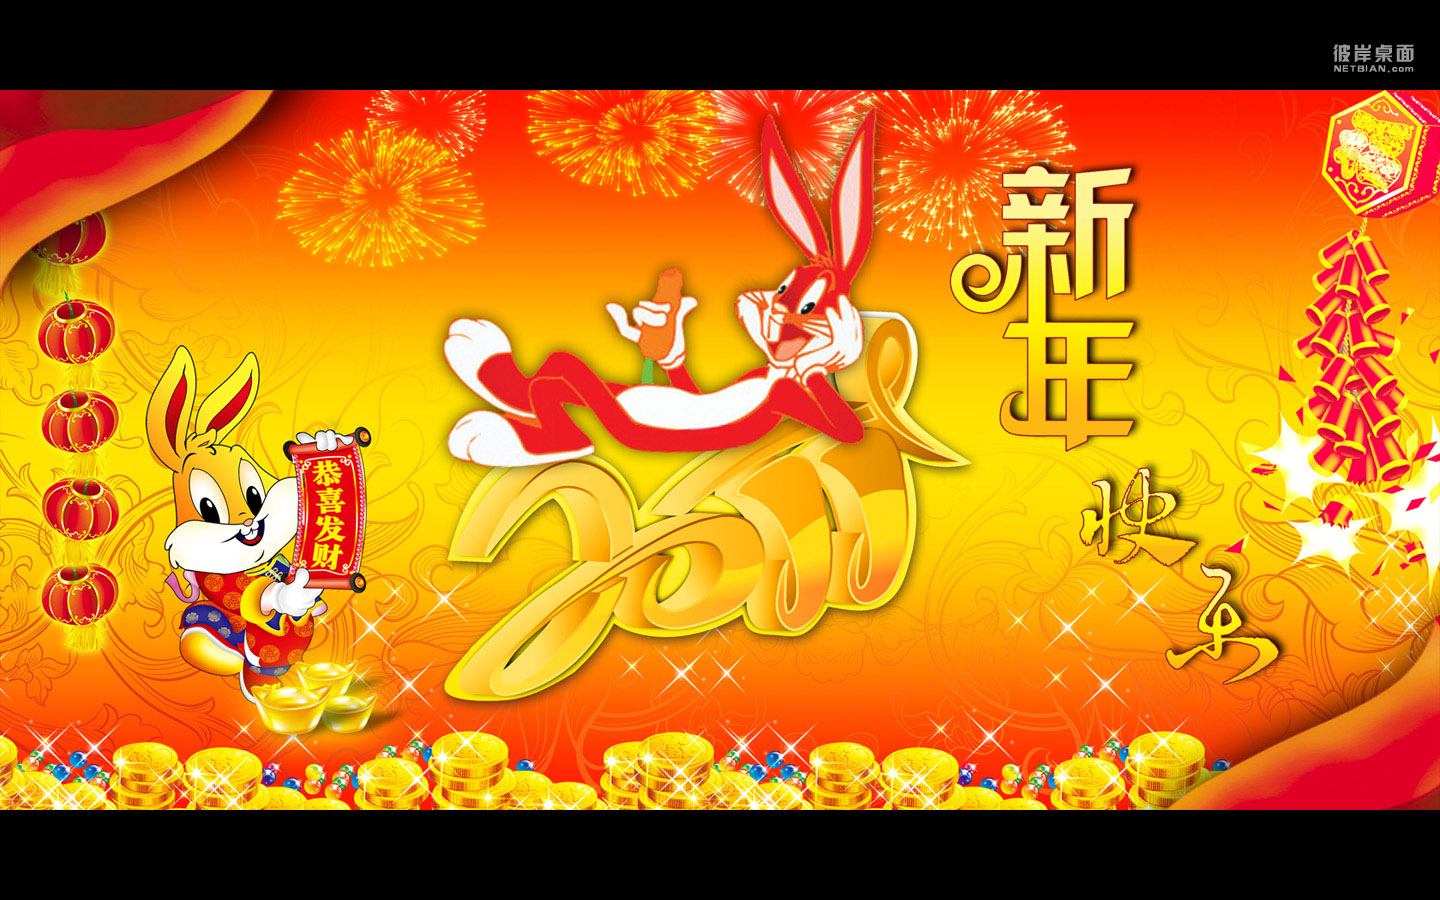 2011 Rabbit Happy New Year Desktop Wallpaper